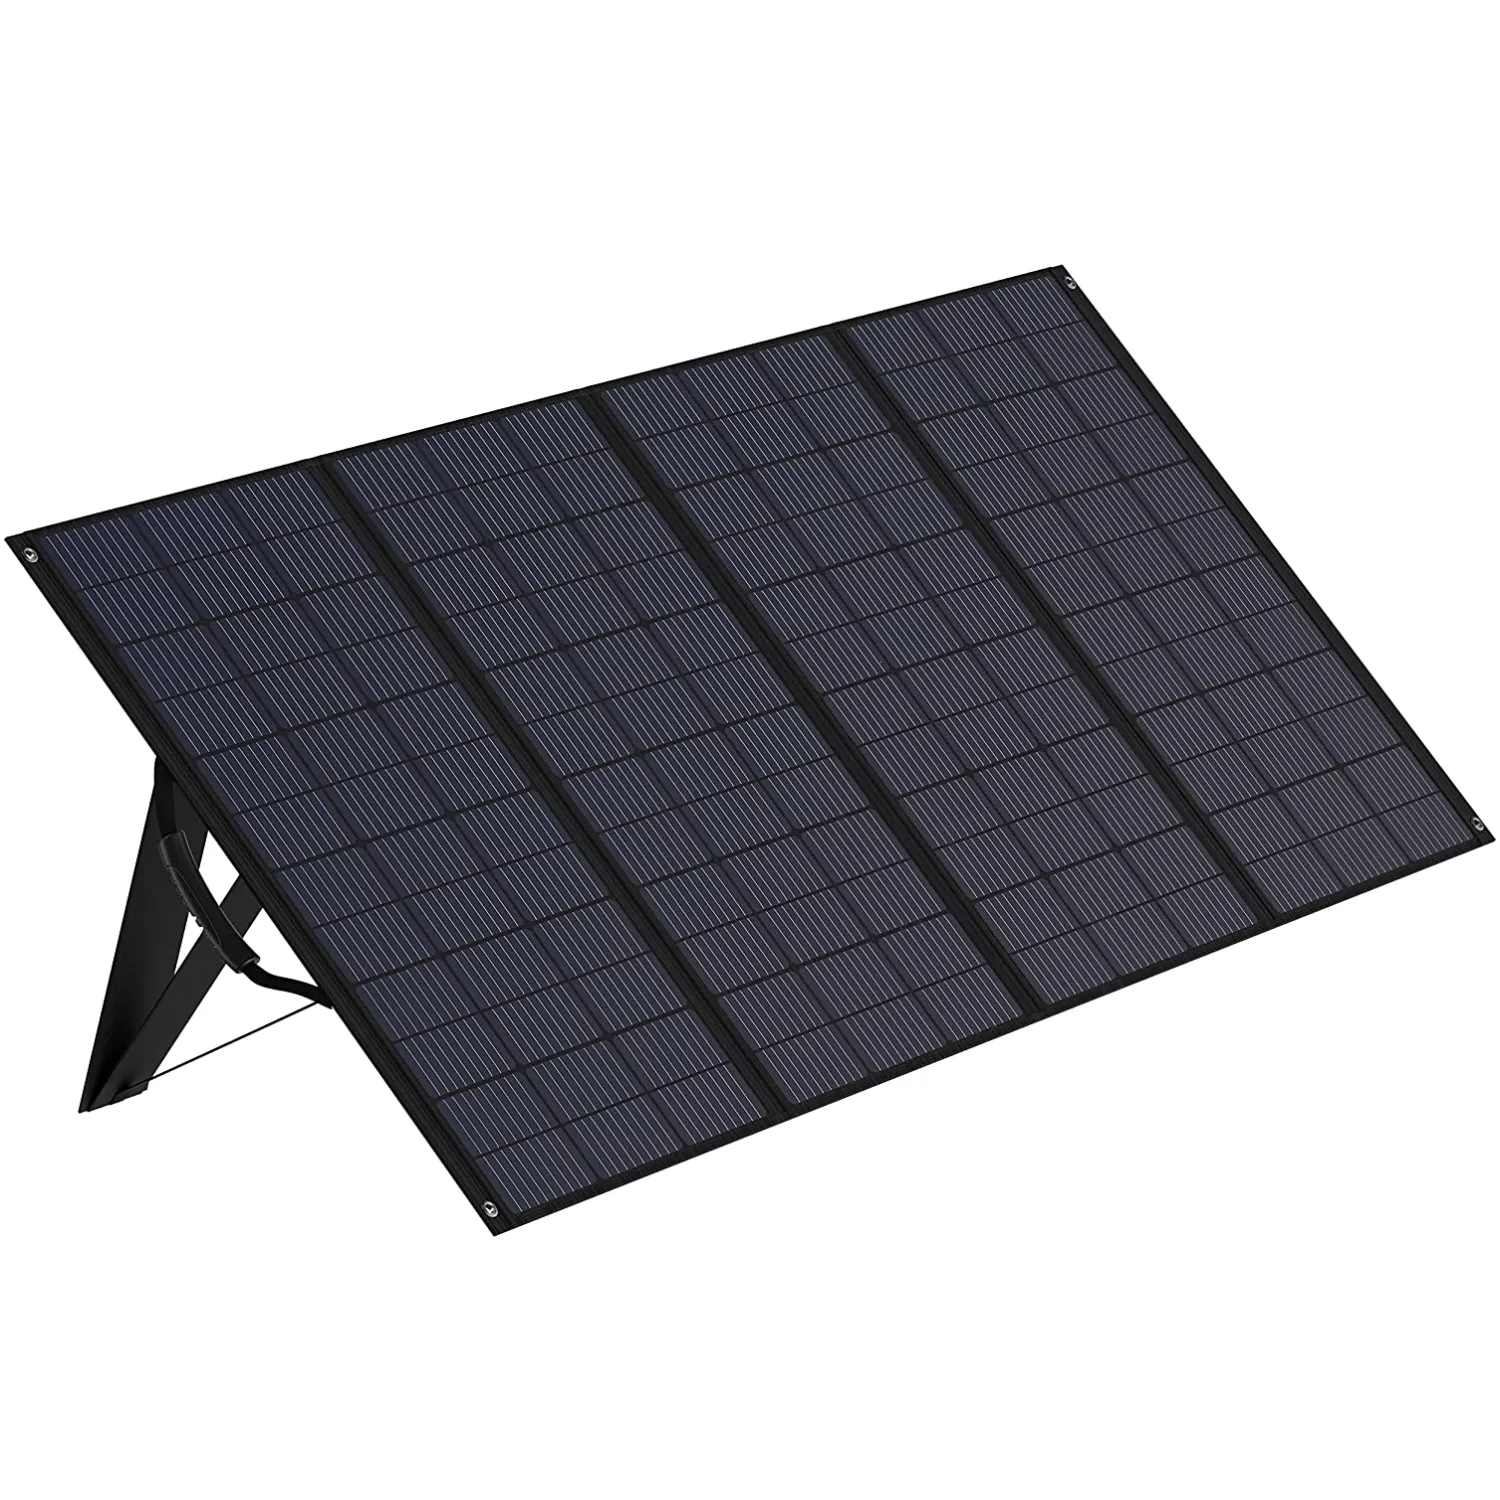 조정 가능한 킥스탠드가 있는 공장 직접 400W 휴대용 태양 전지 패널 접이식 패널, 방수 IP65, MC4 출력 태양열 충전기